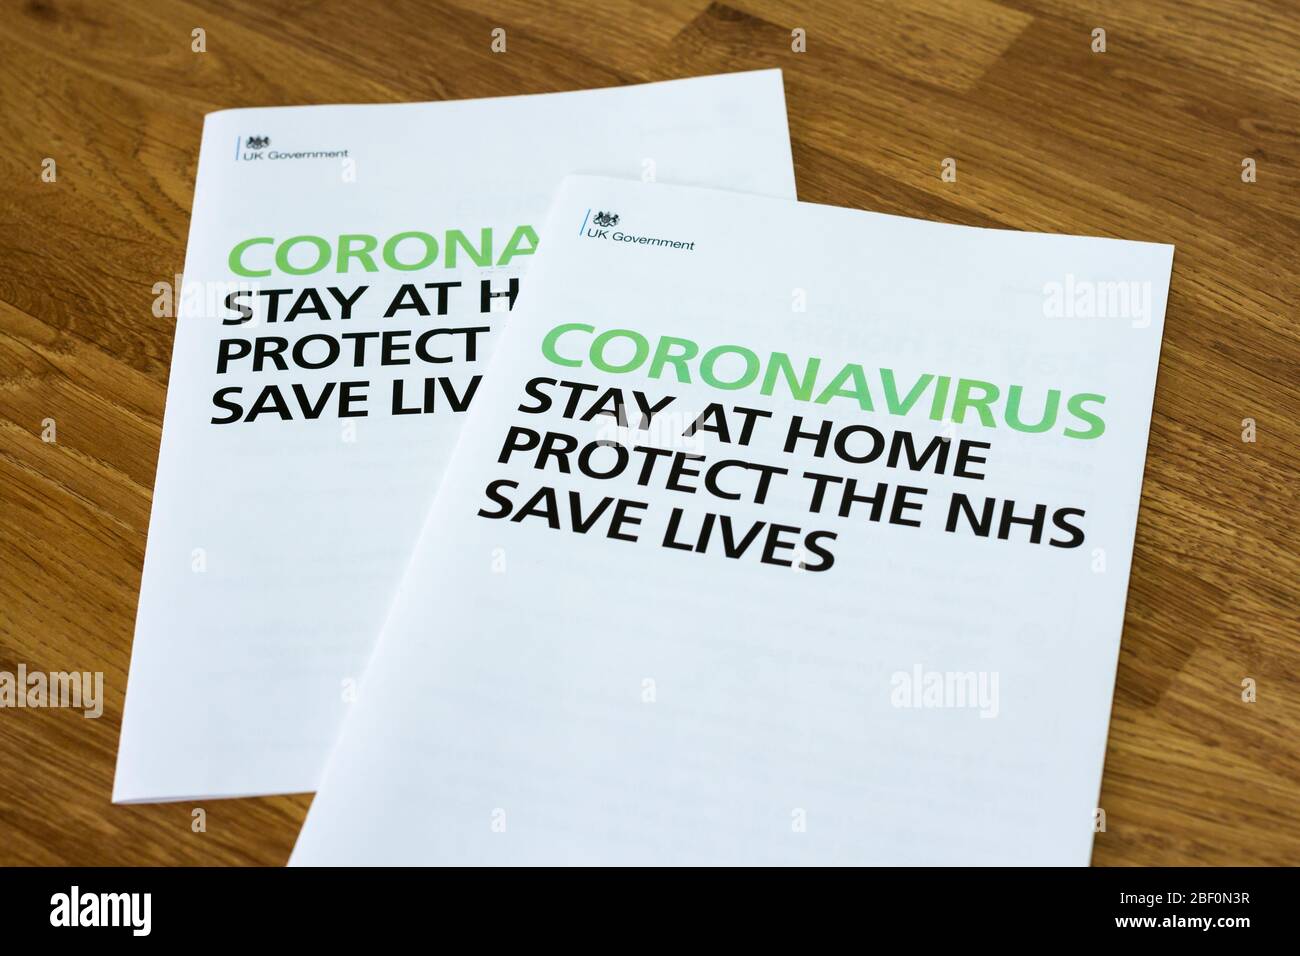 Volantini informativi sul coronavirus, "Stay at home Protect the NHS SAVE Lives", volantino ufficiale del governo britannico 2020 Foto Stock